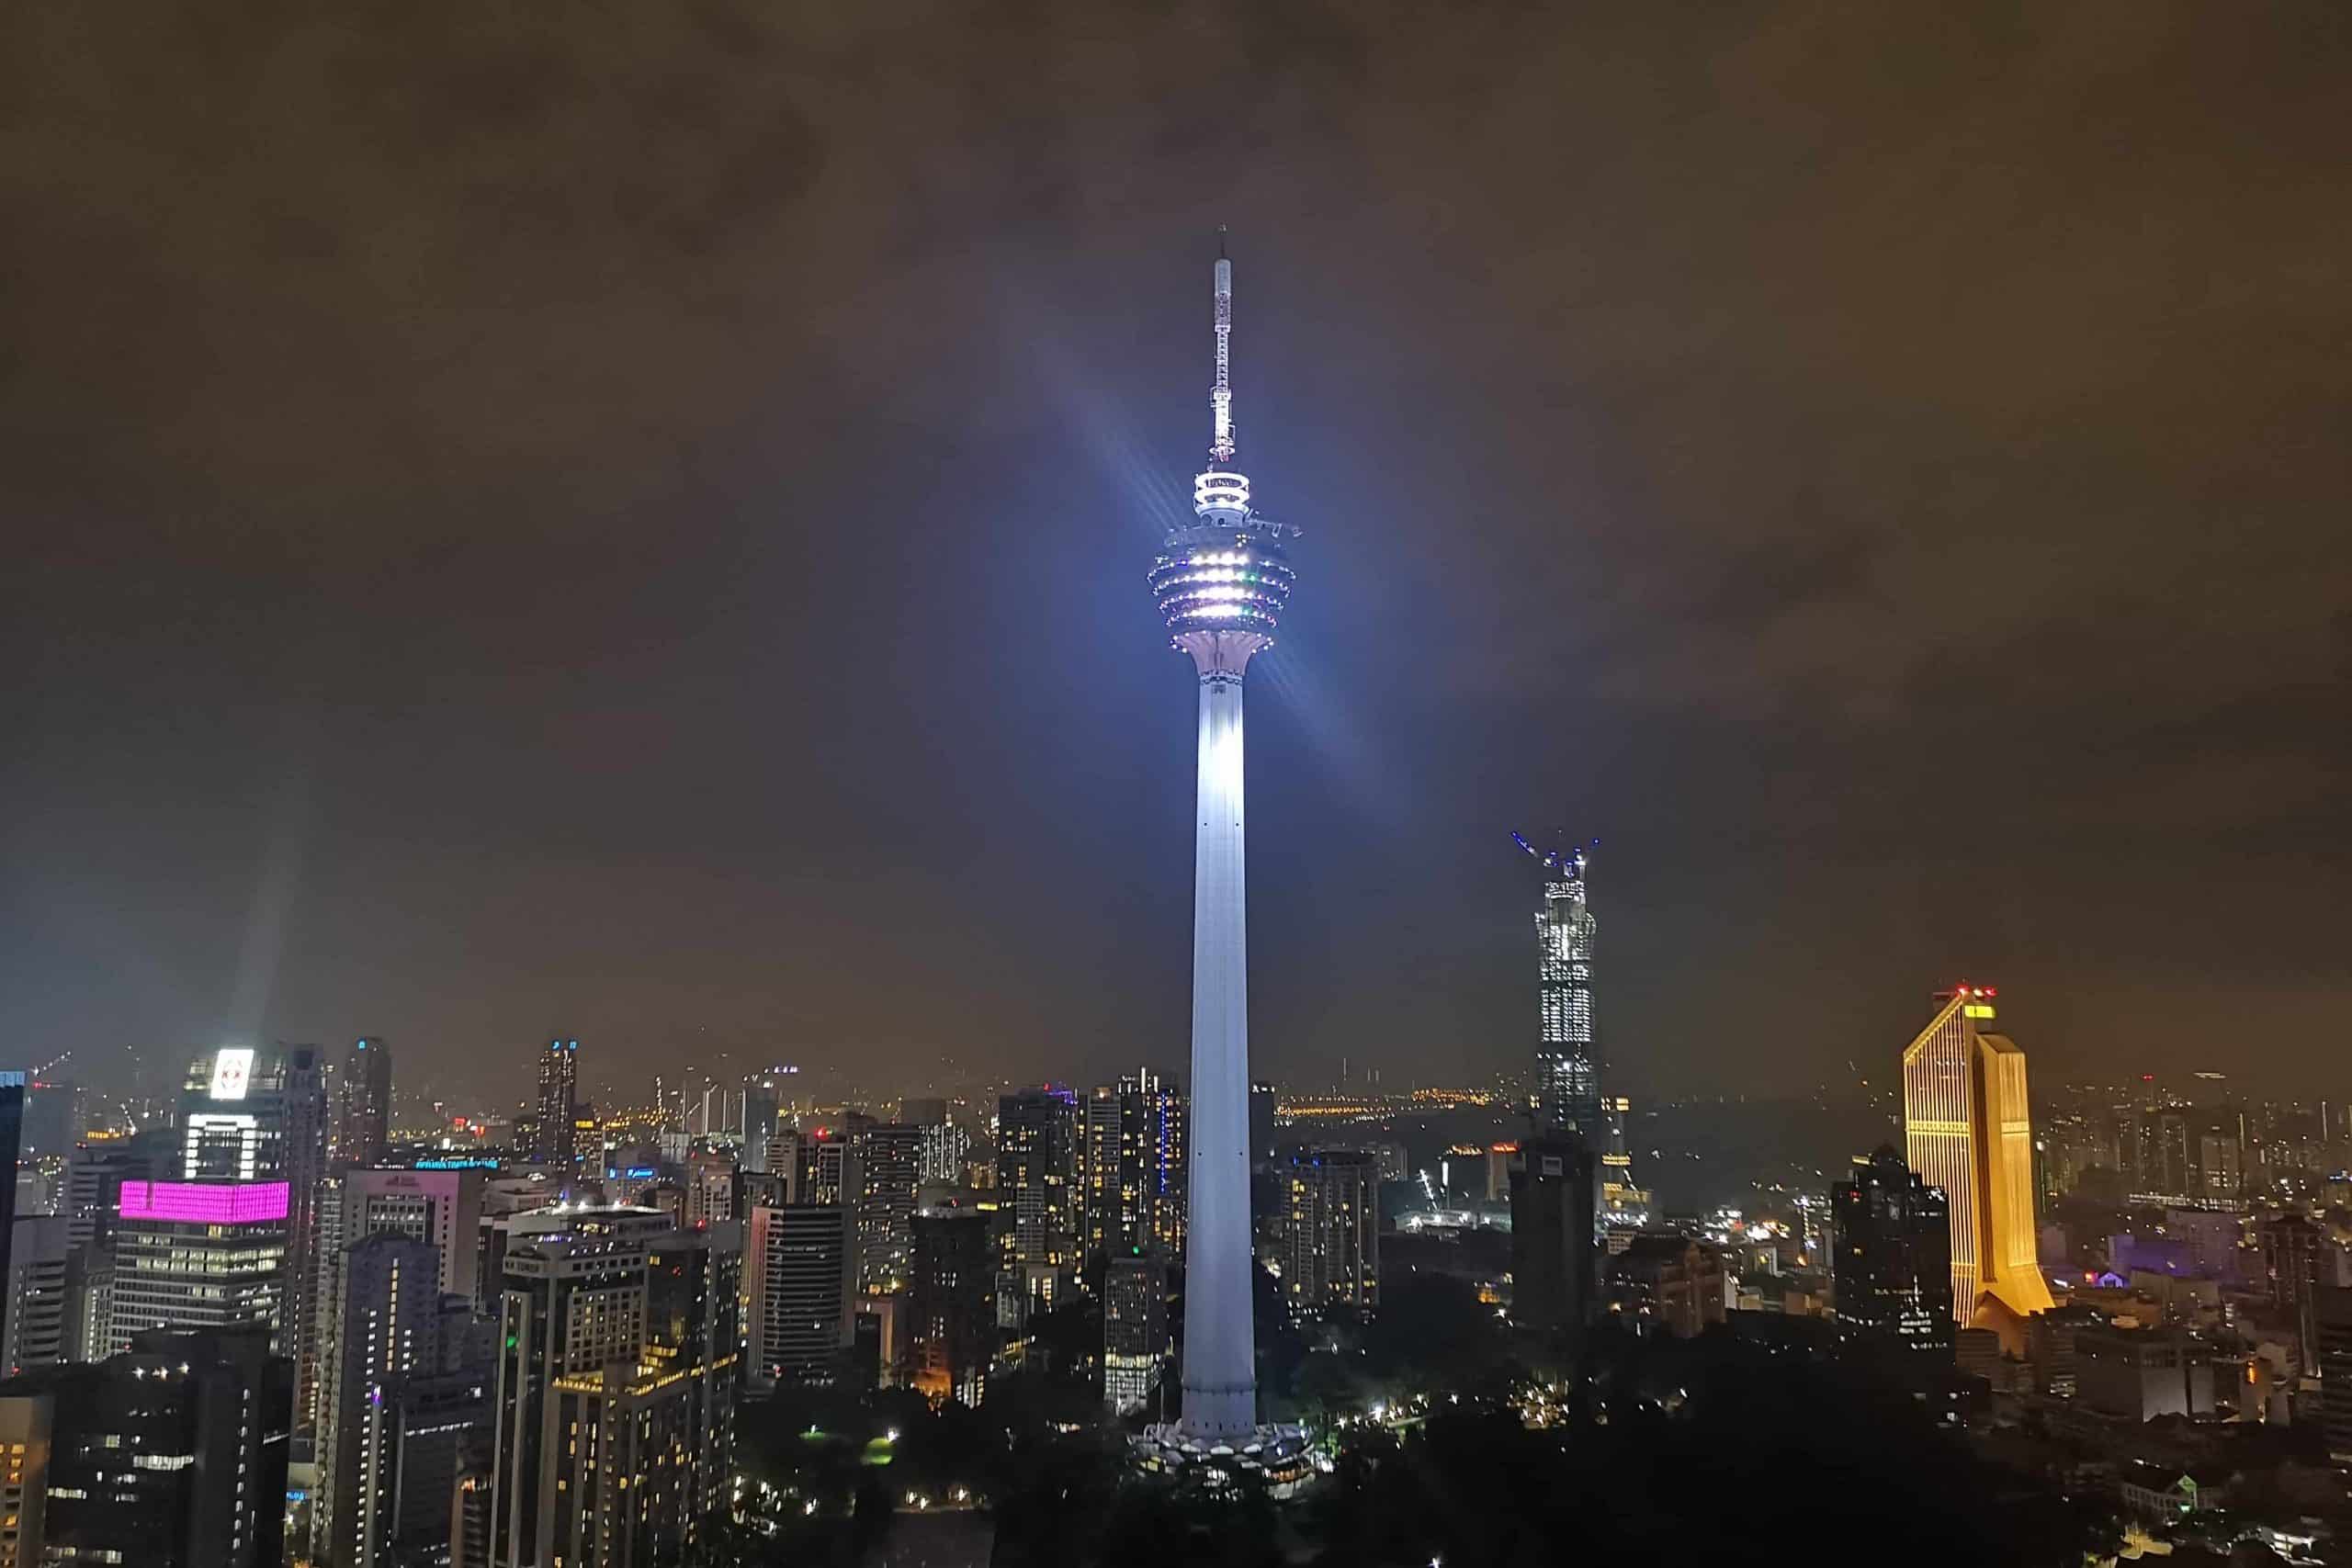 der Fernsehturm Menara von Kuala Lumpur bei Nacht